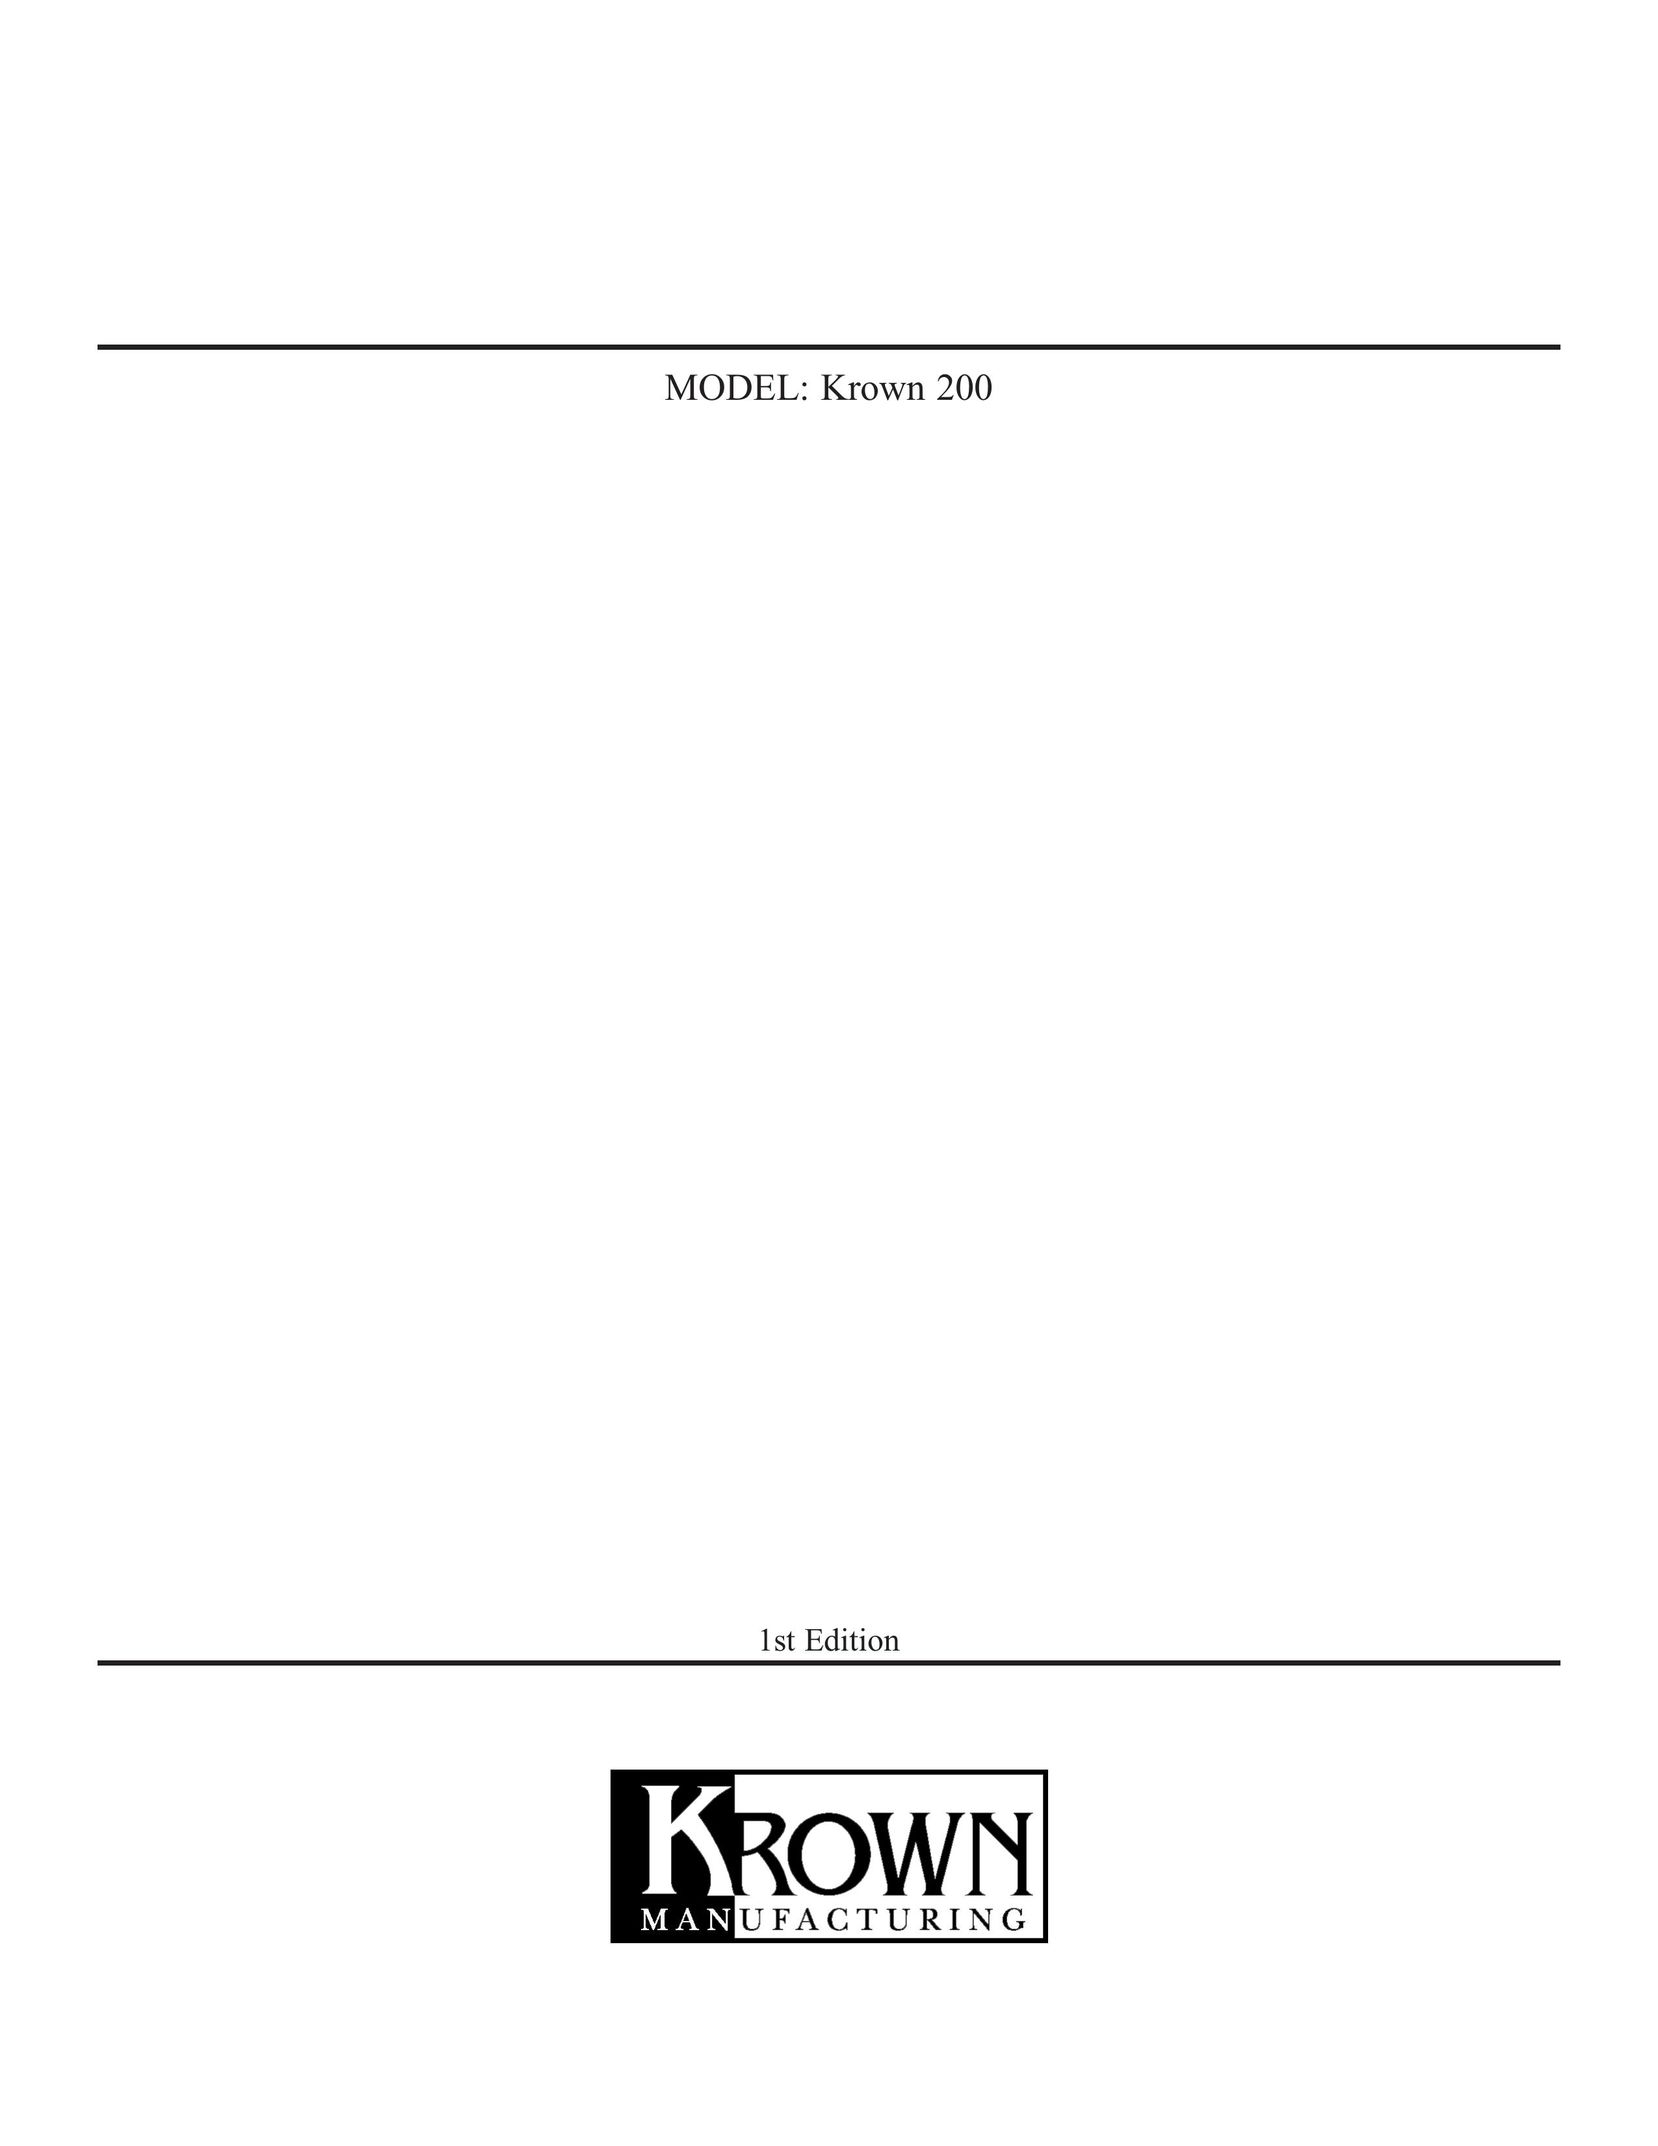 Krown Manufacturing Krown 200 Answering Machine User Manual